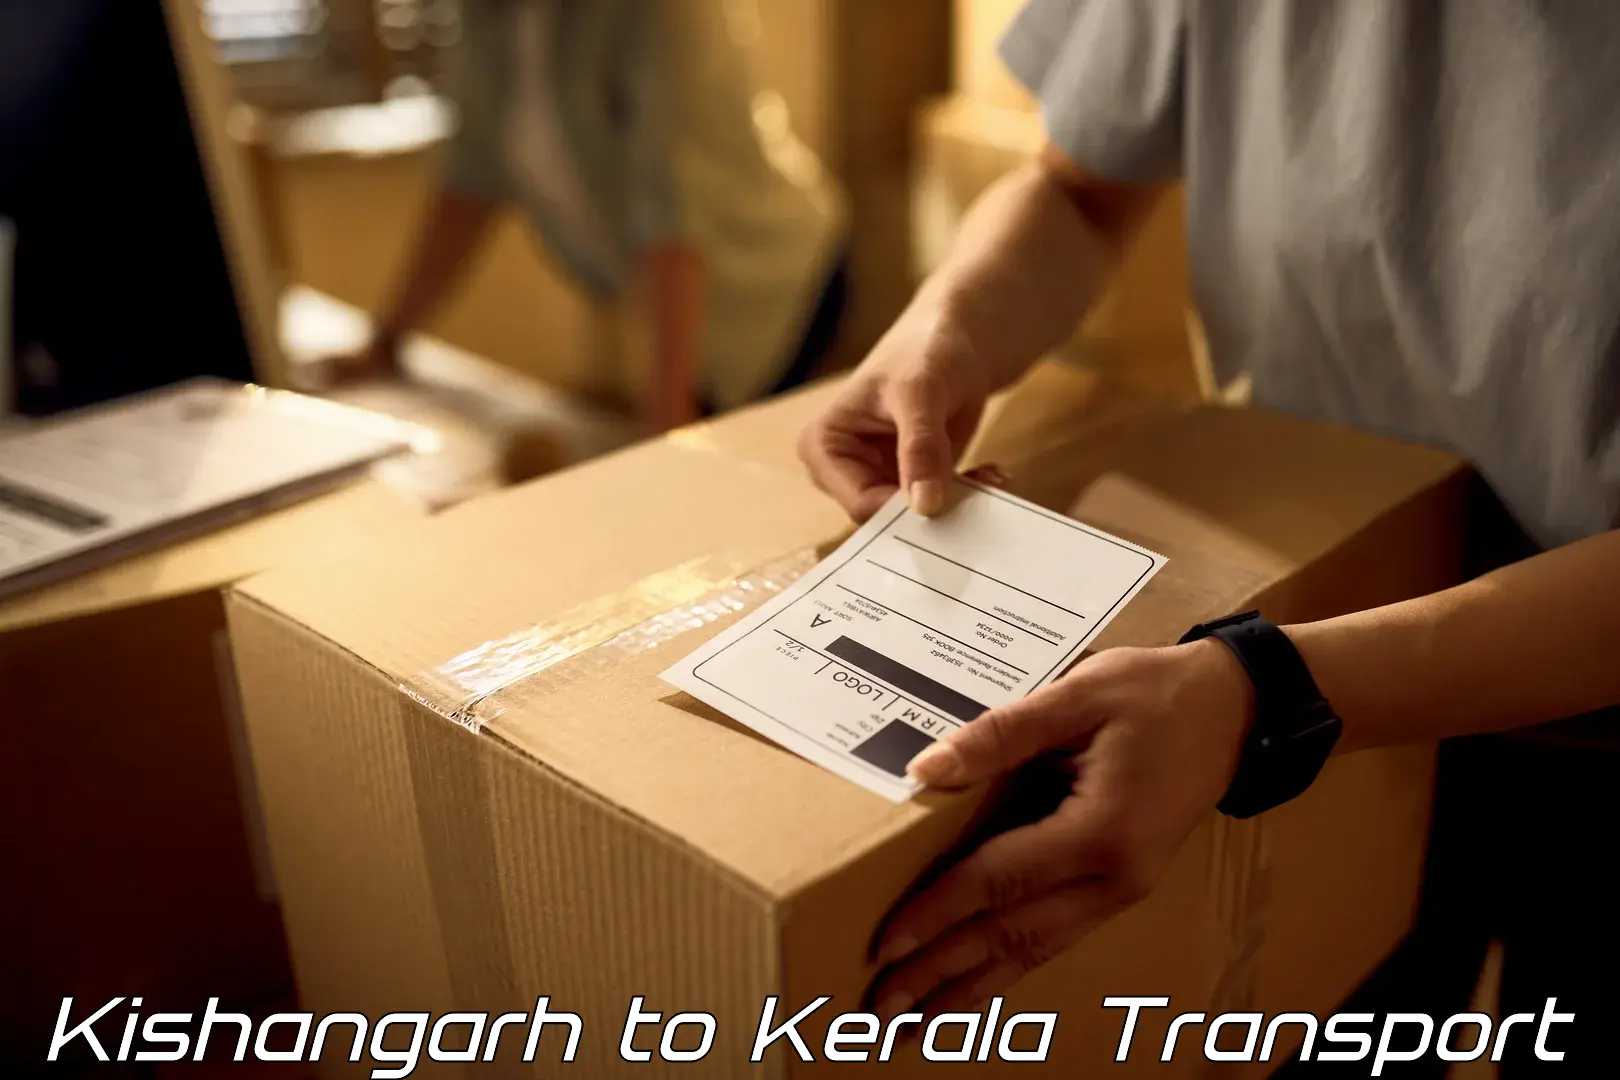 Vehicle transport services in Kishangarh to Manjeri Kla